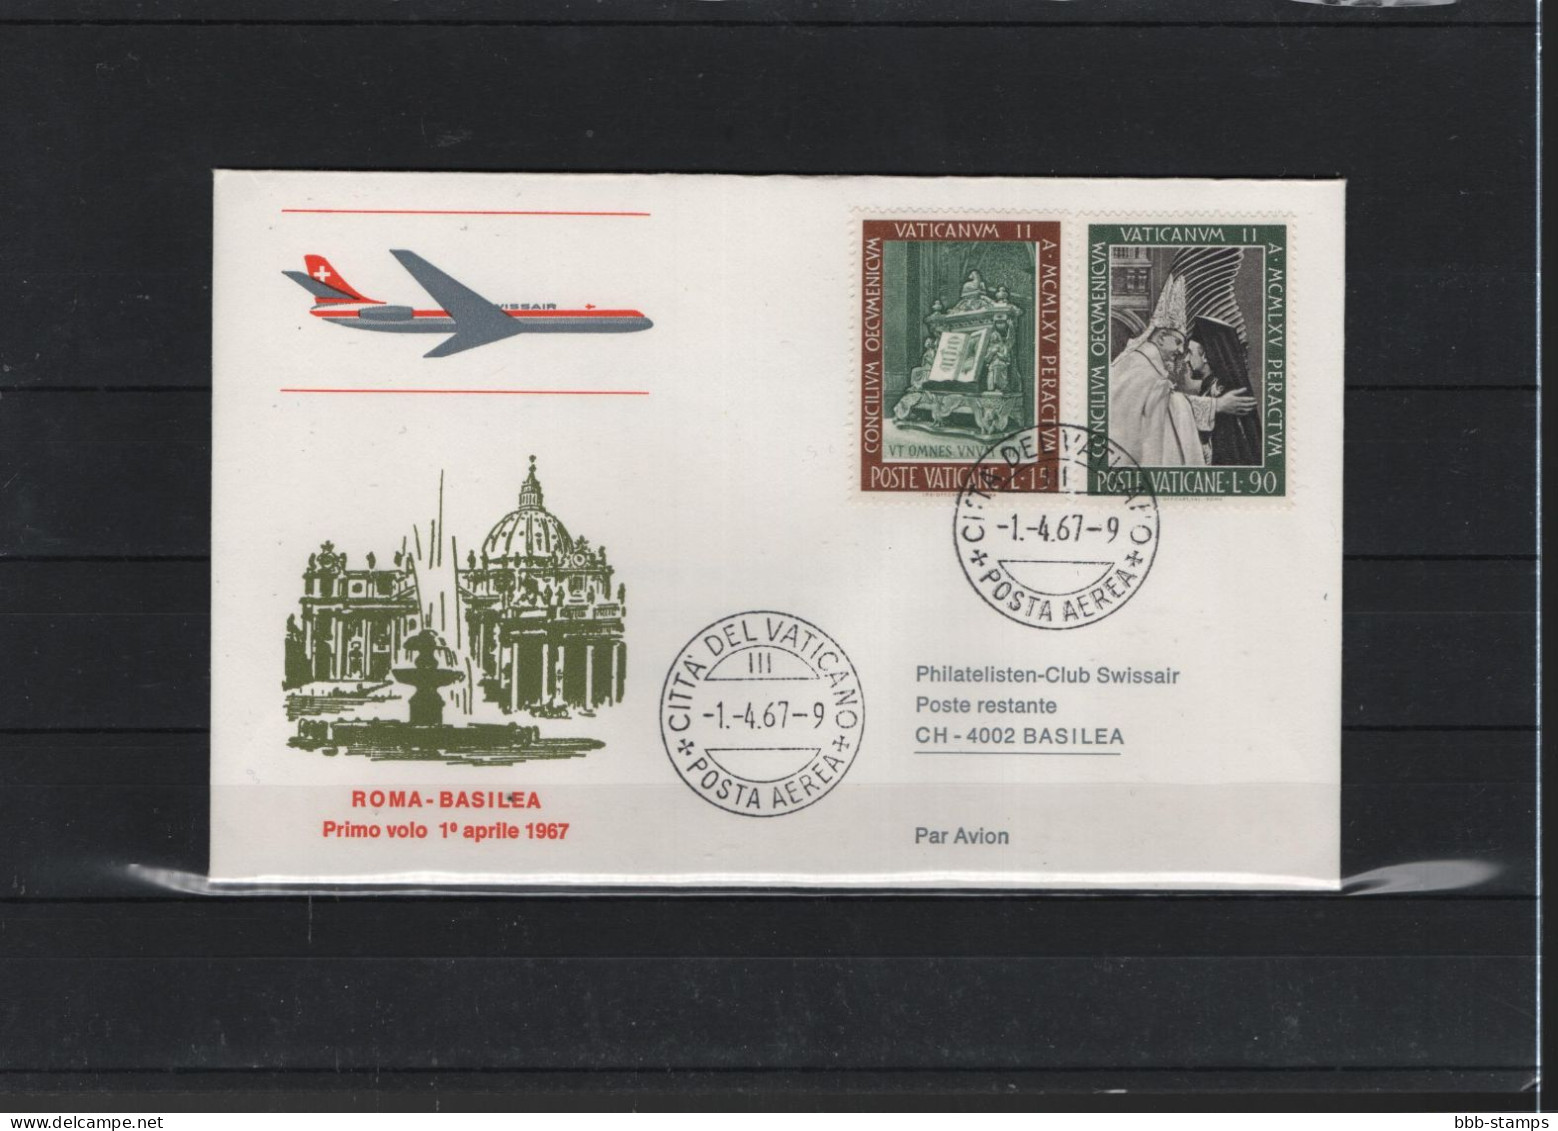 Schweiz Air Mail Swissair  FFC  1.4..1967 Basel - Rom VV - Eerste Vluchten